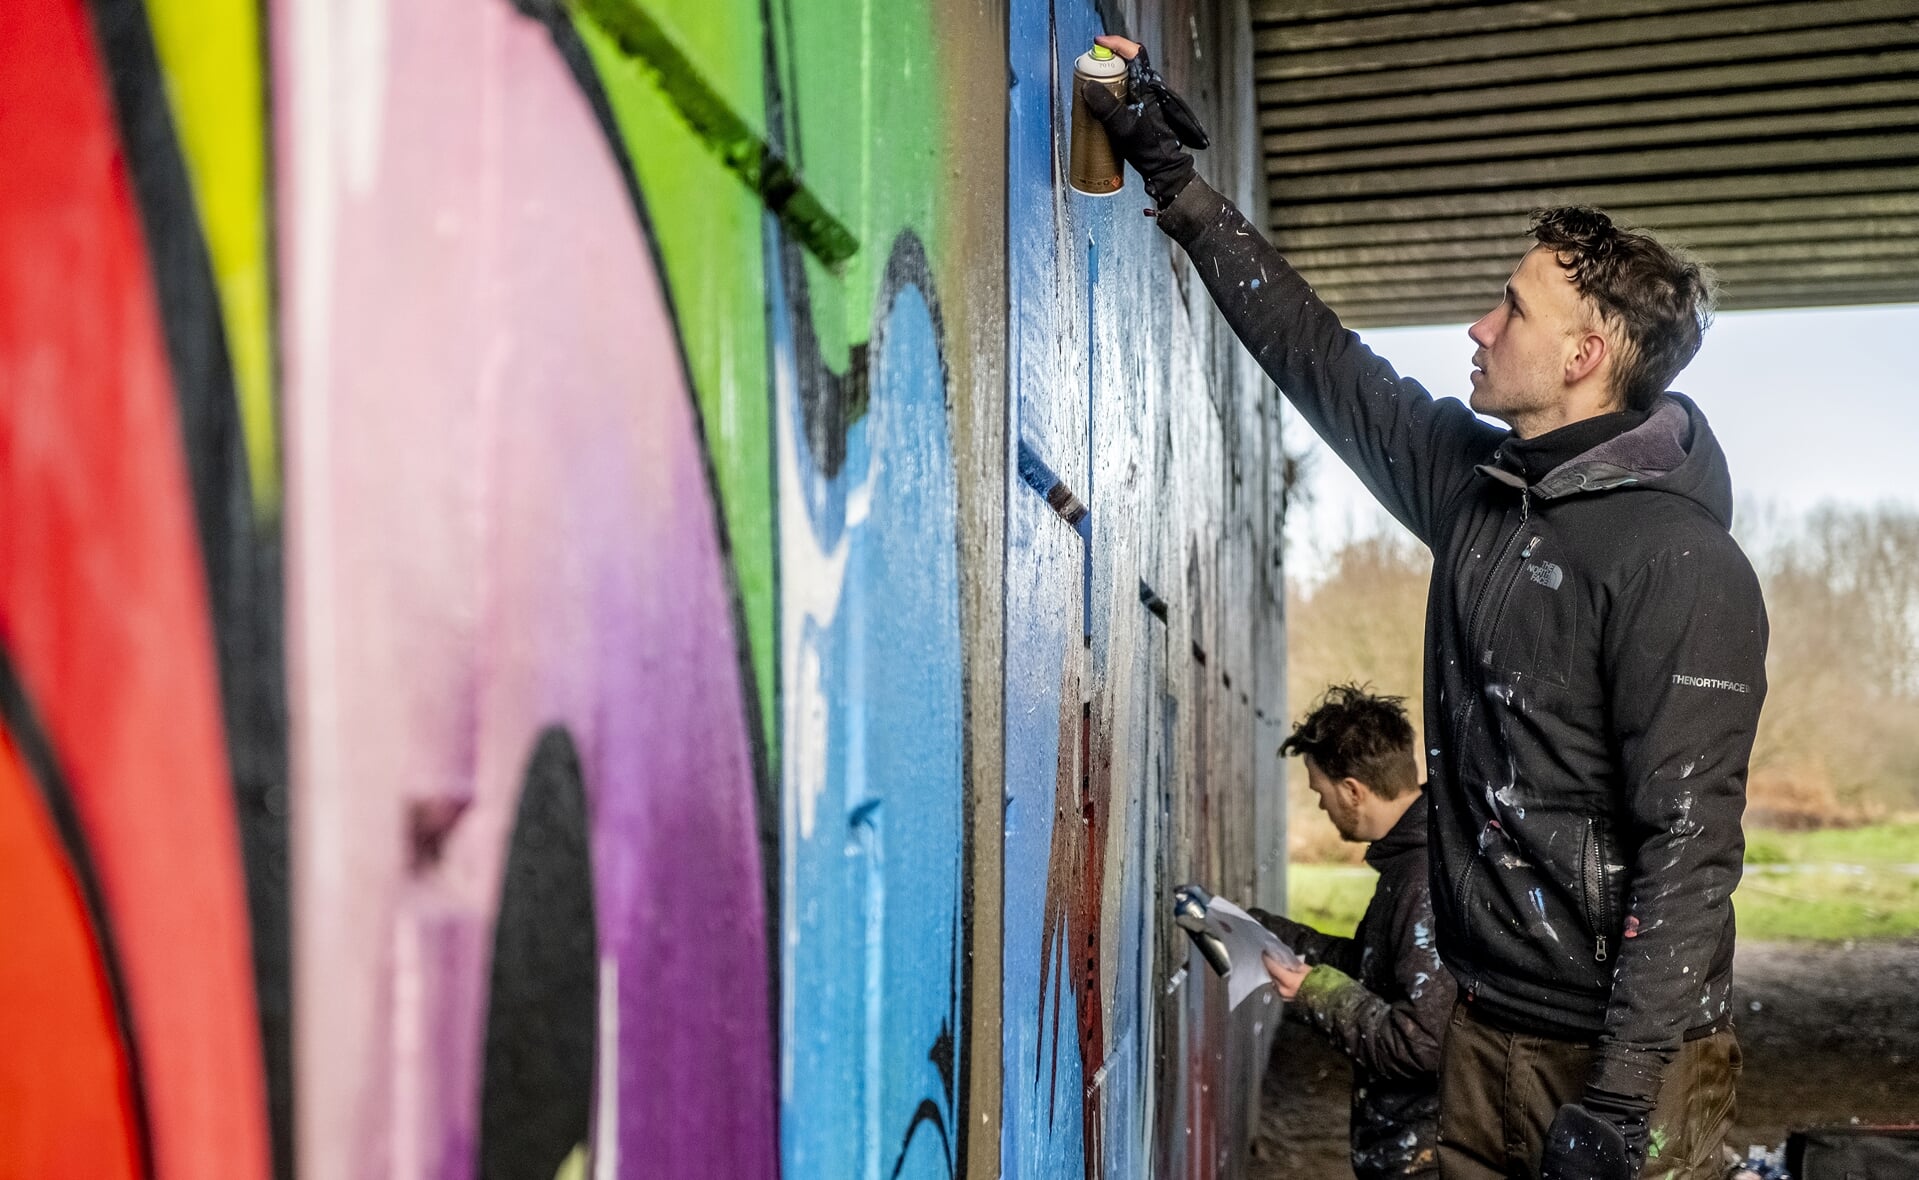 Jan Pennings (op de voorgrond) en Paul Jongsma van stichting Tunnel Vision Boxtel maakten in opdracht van het team van ‘Boxtel – 2020 in 366 verhalen’ een graffitikunstwerk. Het fraaie resultaat is te zien in de verhalenbundel die begin 2021 verschijnt. (Foto: Peter de Koning).